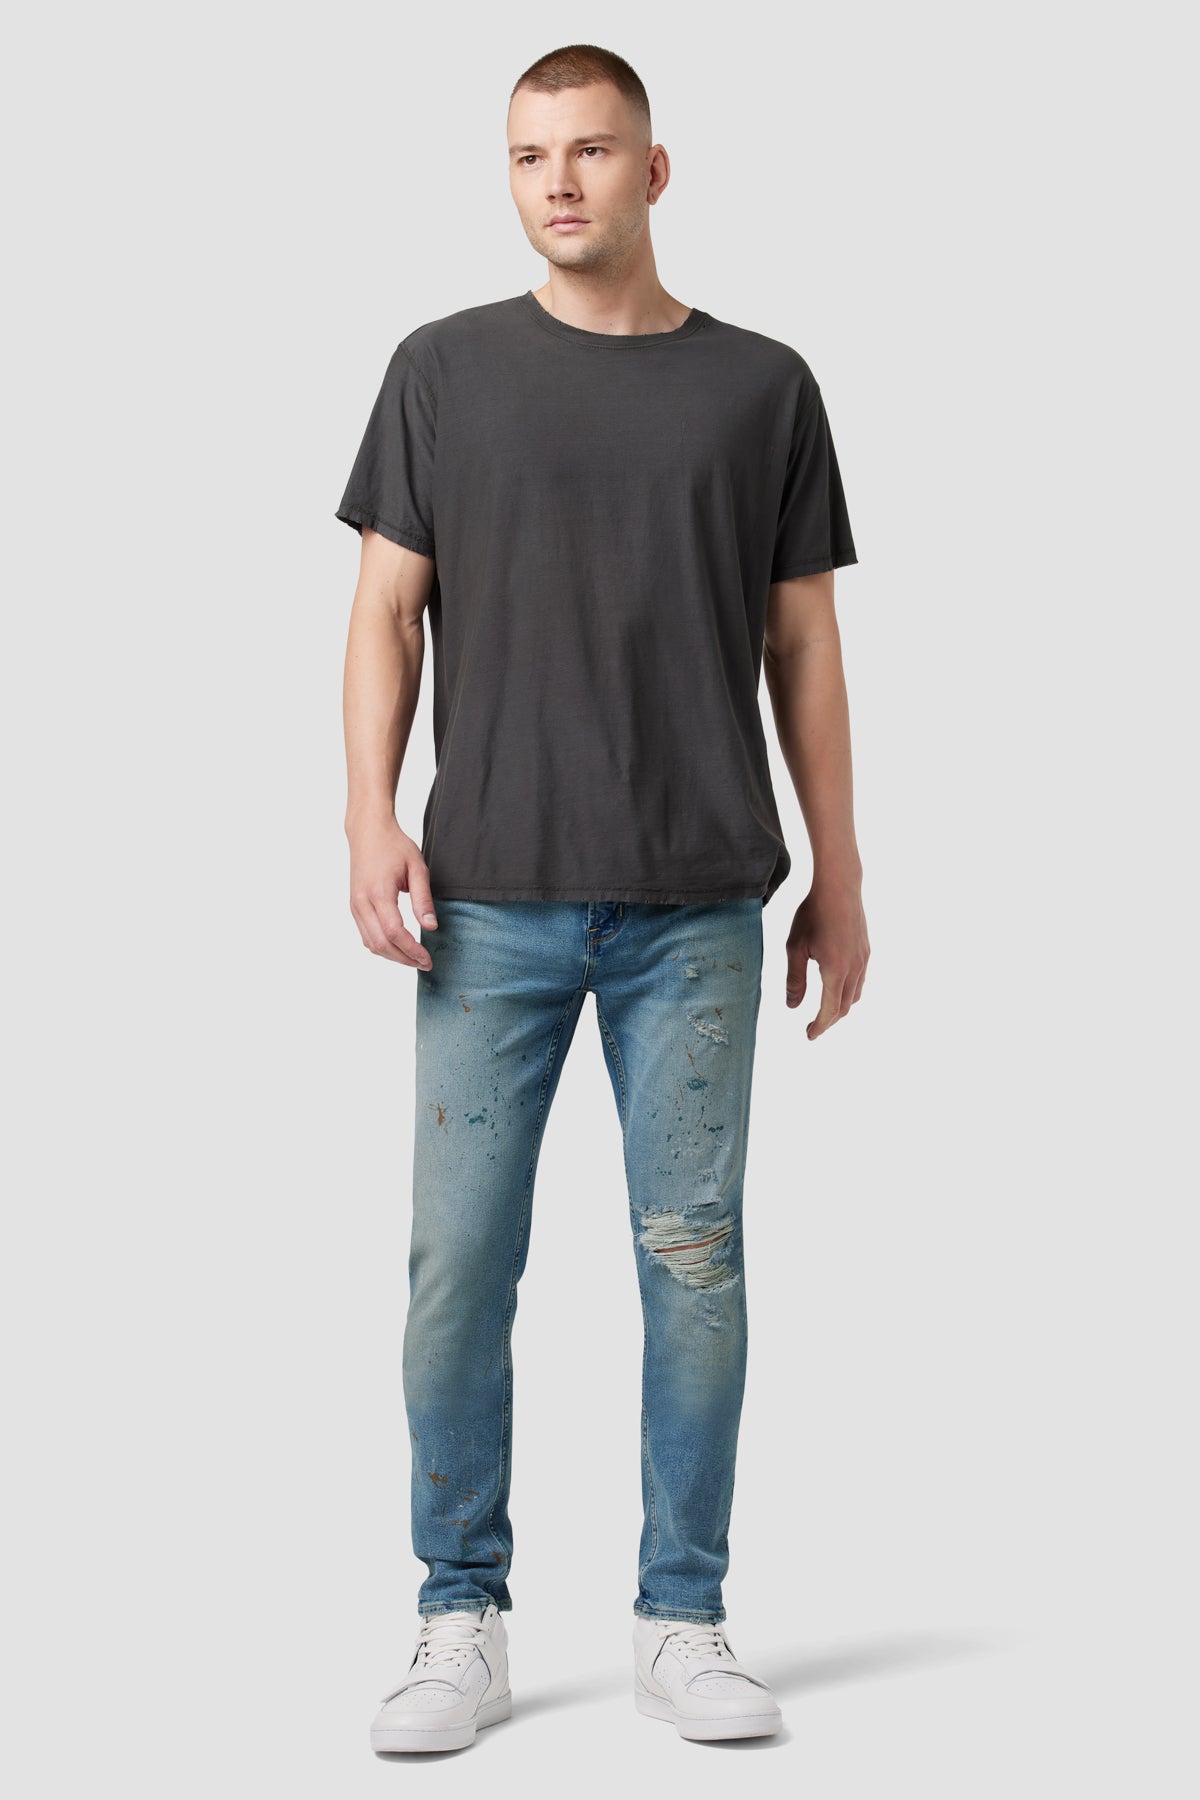 Axl Slim Jean | Premium Italian Fabric | Hudson Jeans